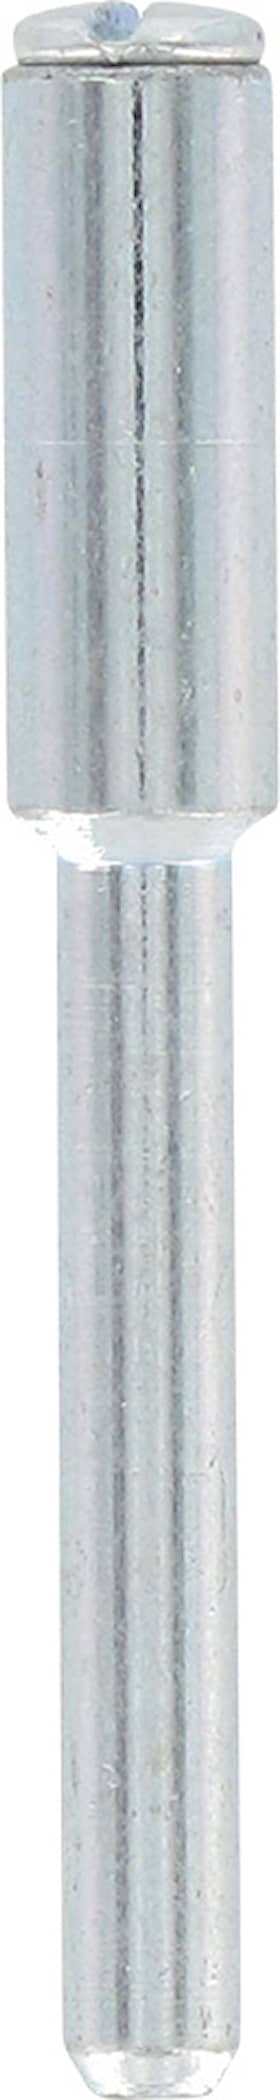 Dremel spindel 402JA 3,2 mm 4 stk